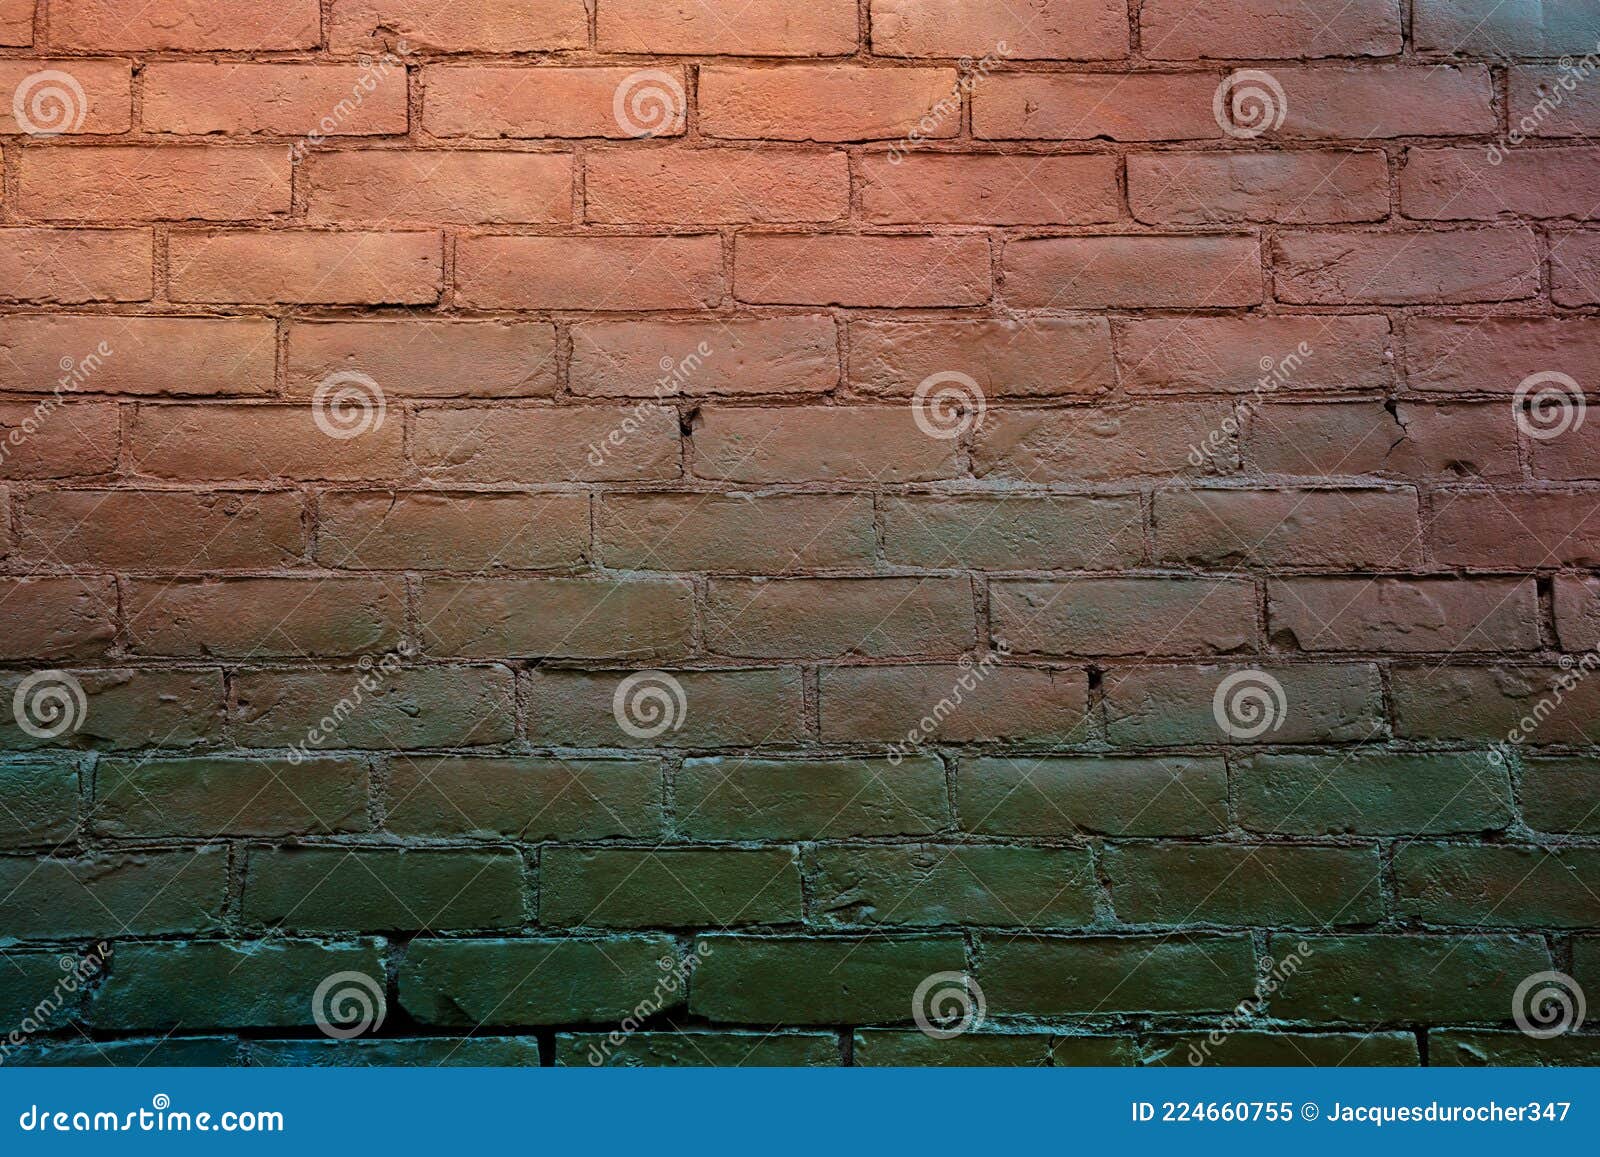 градиент кирпич стены шаблон текстура фон город стиль графика оранжевый и  коричневый окрашенный бетон Стоковое Изображение - изображение  насчитывающей художничества, зодчества: 224660755